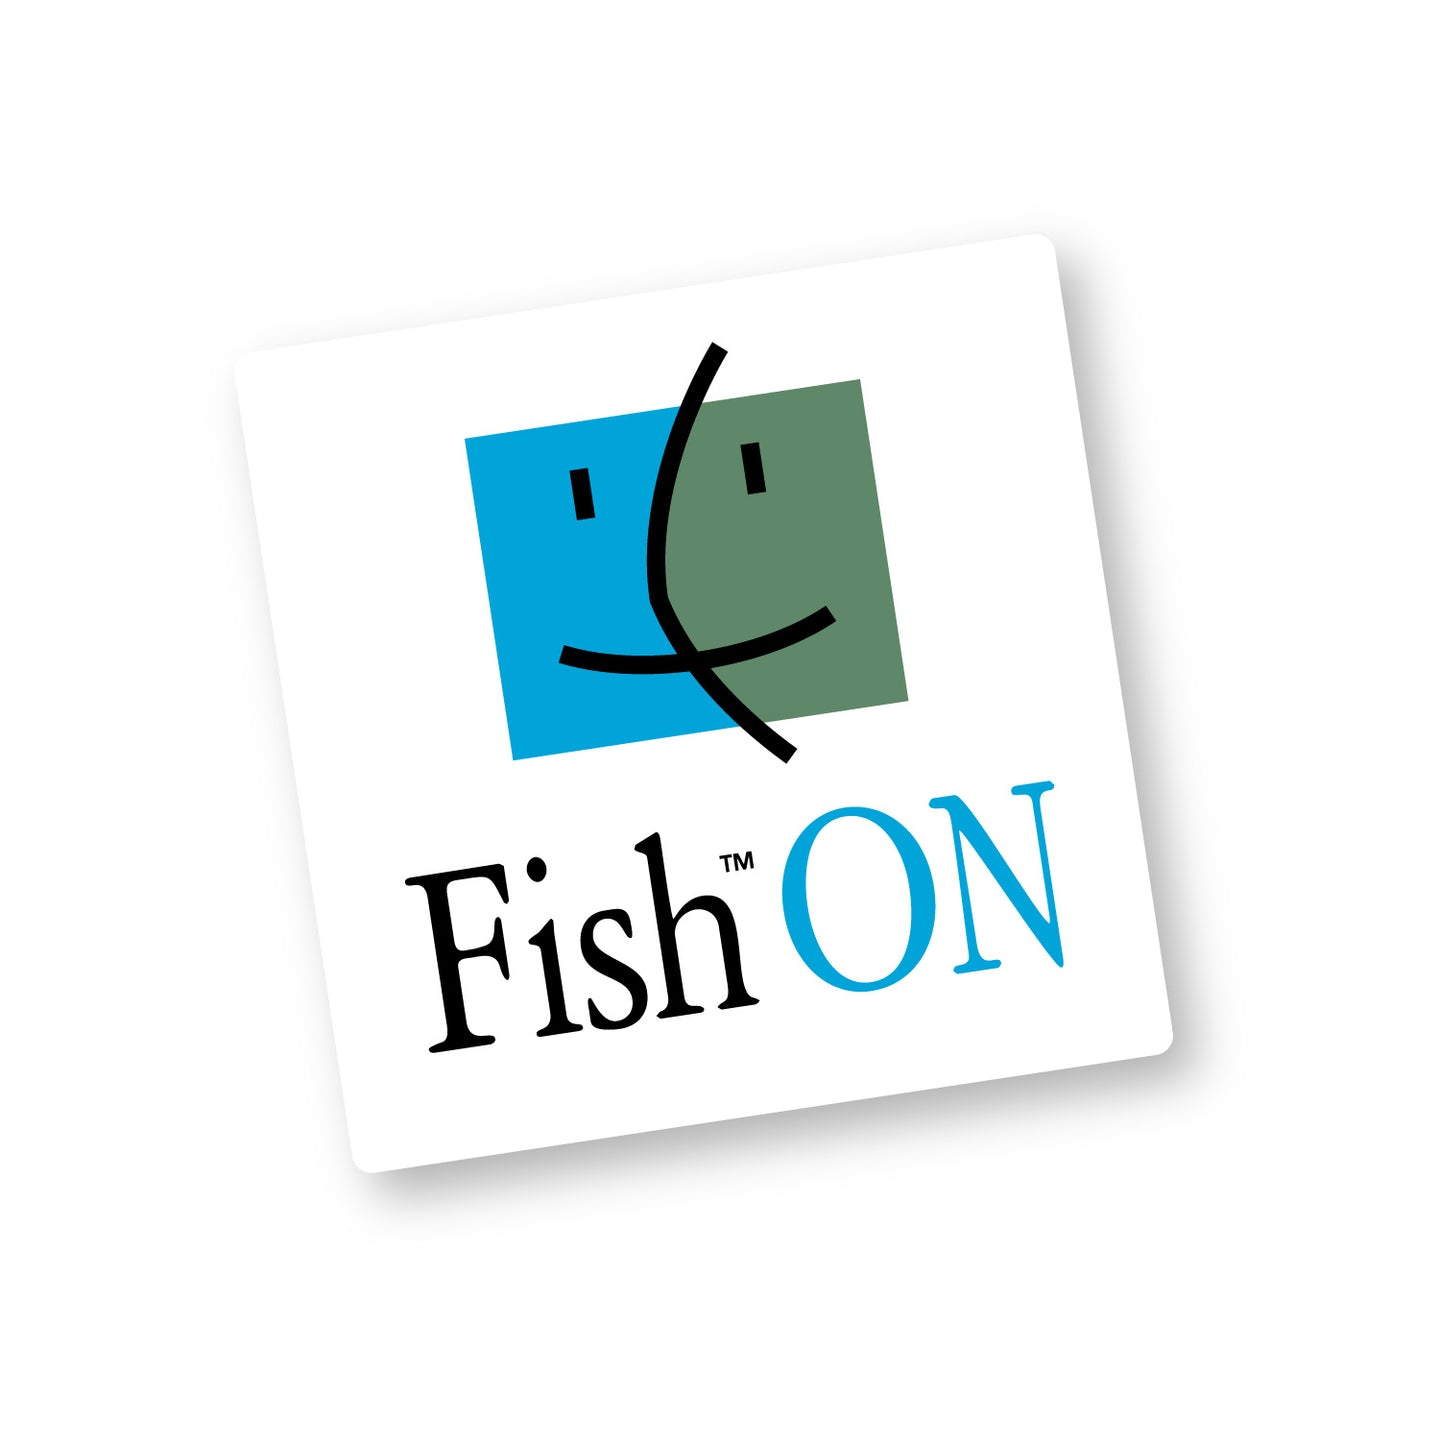 FISH ON!